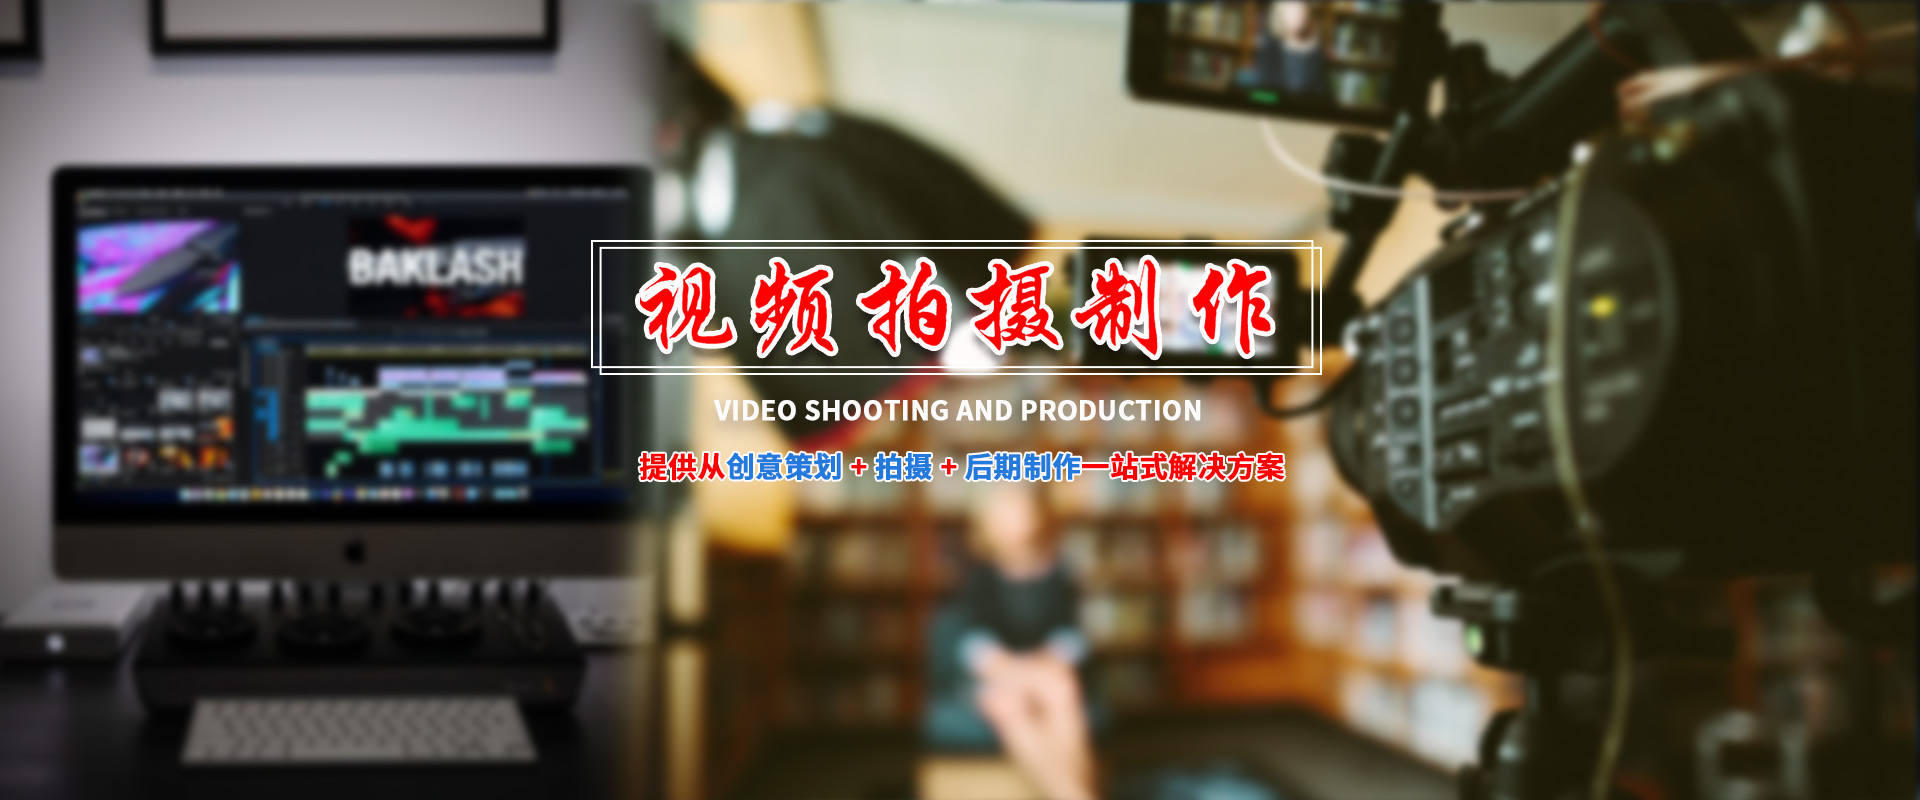 昆明短视频运营,云南短视频推广,昆明网络营销